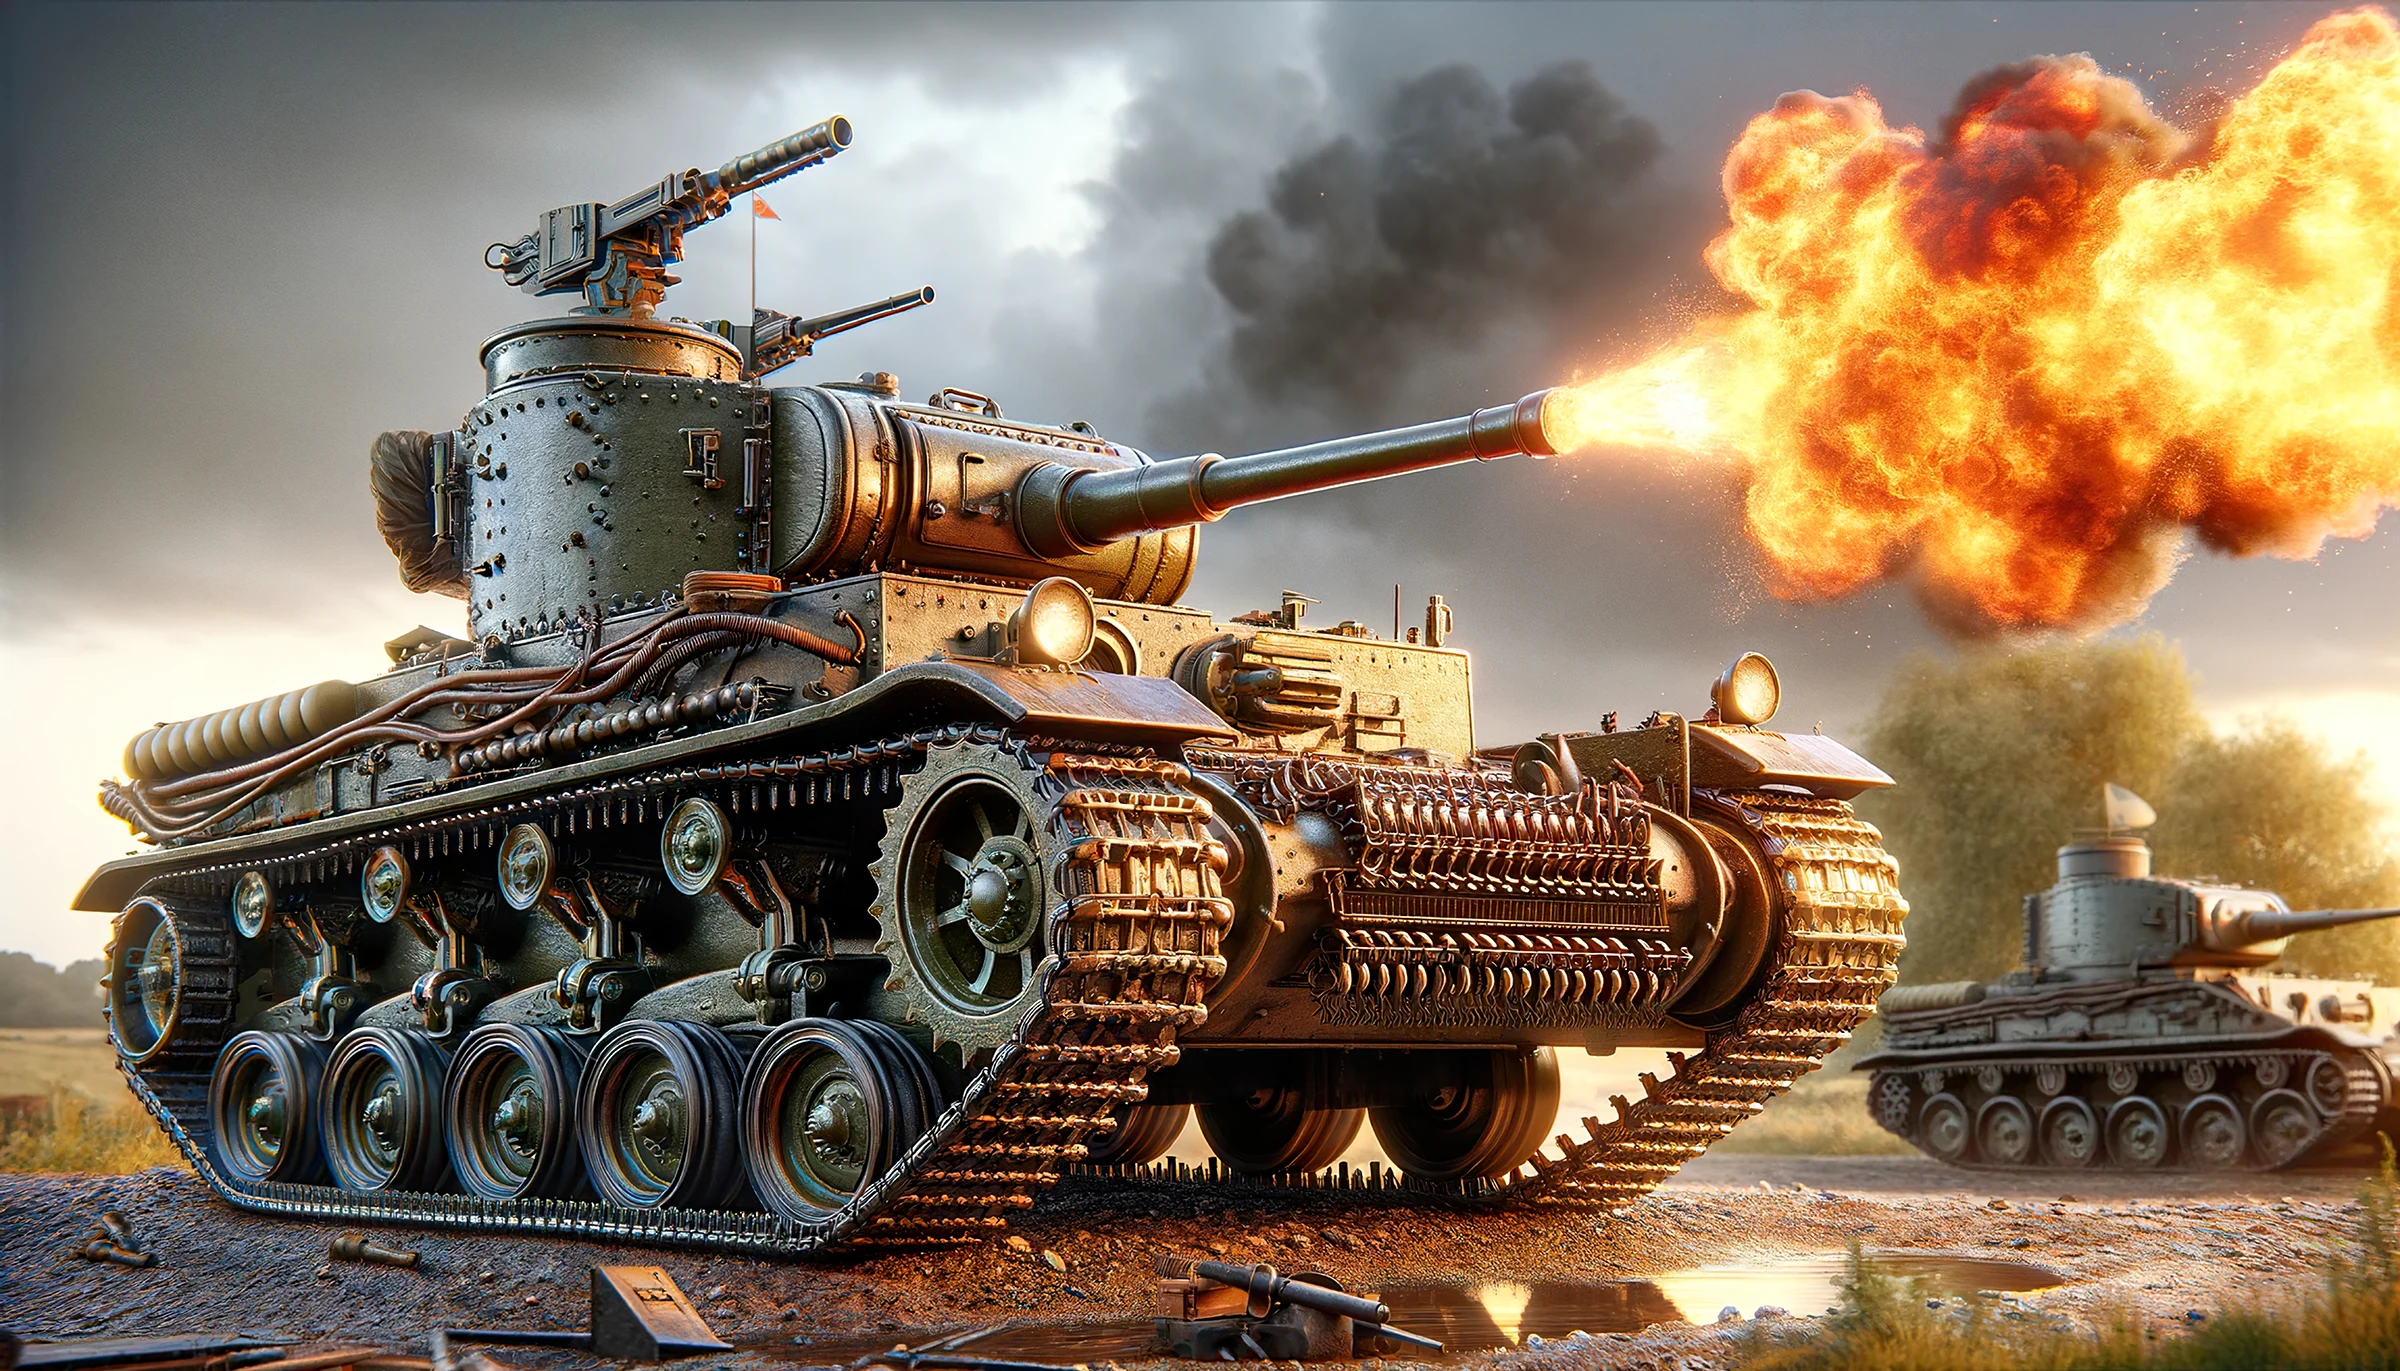 Representación del tanque Churchill “Cocodrilo” generada por IA con fines ilustrativos.